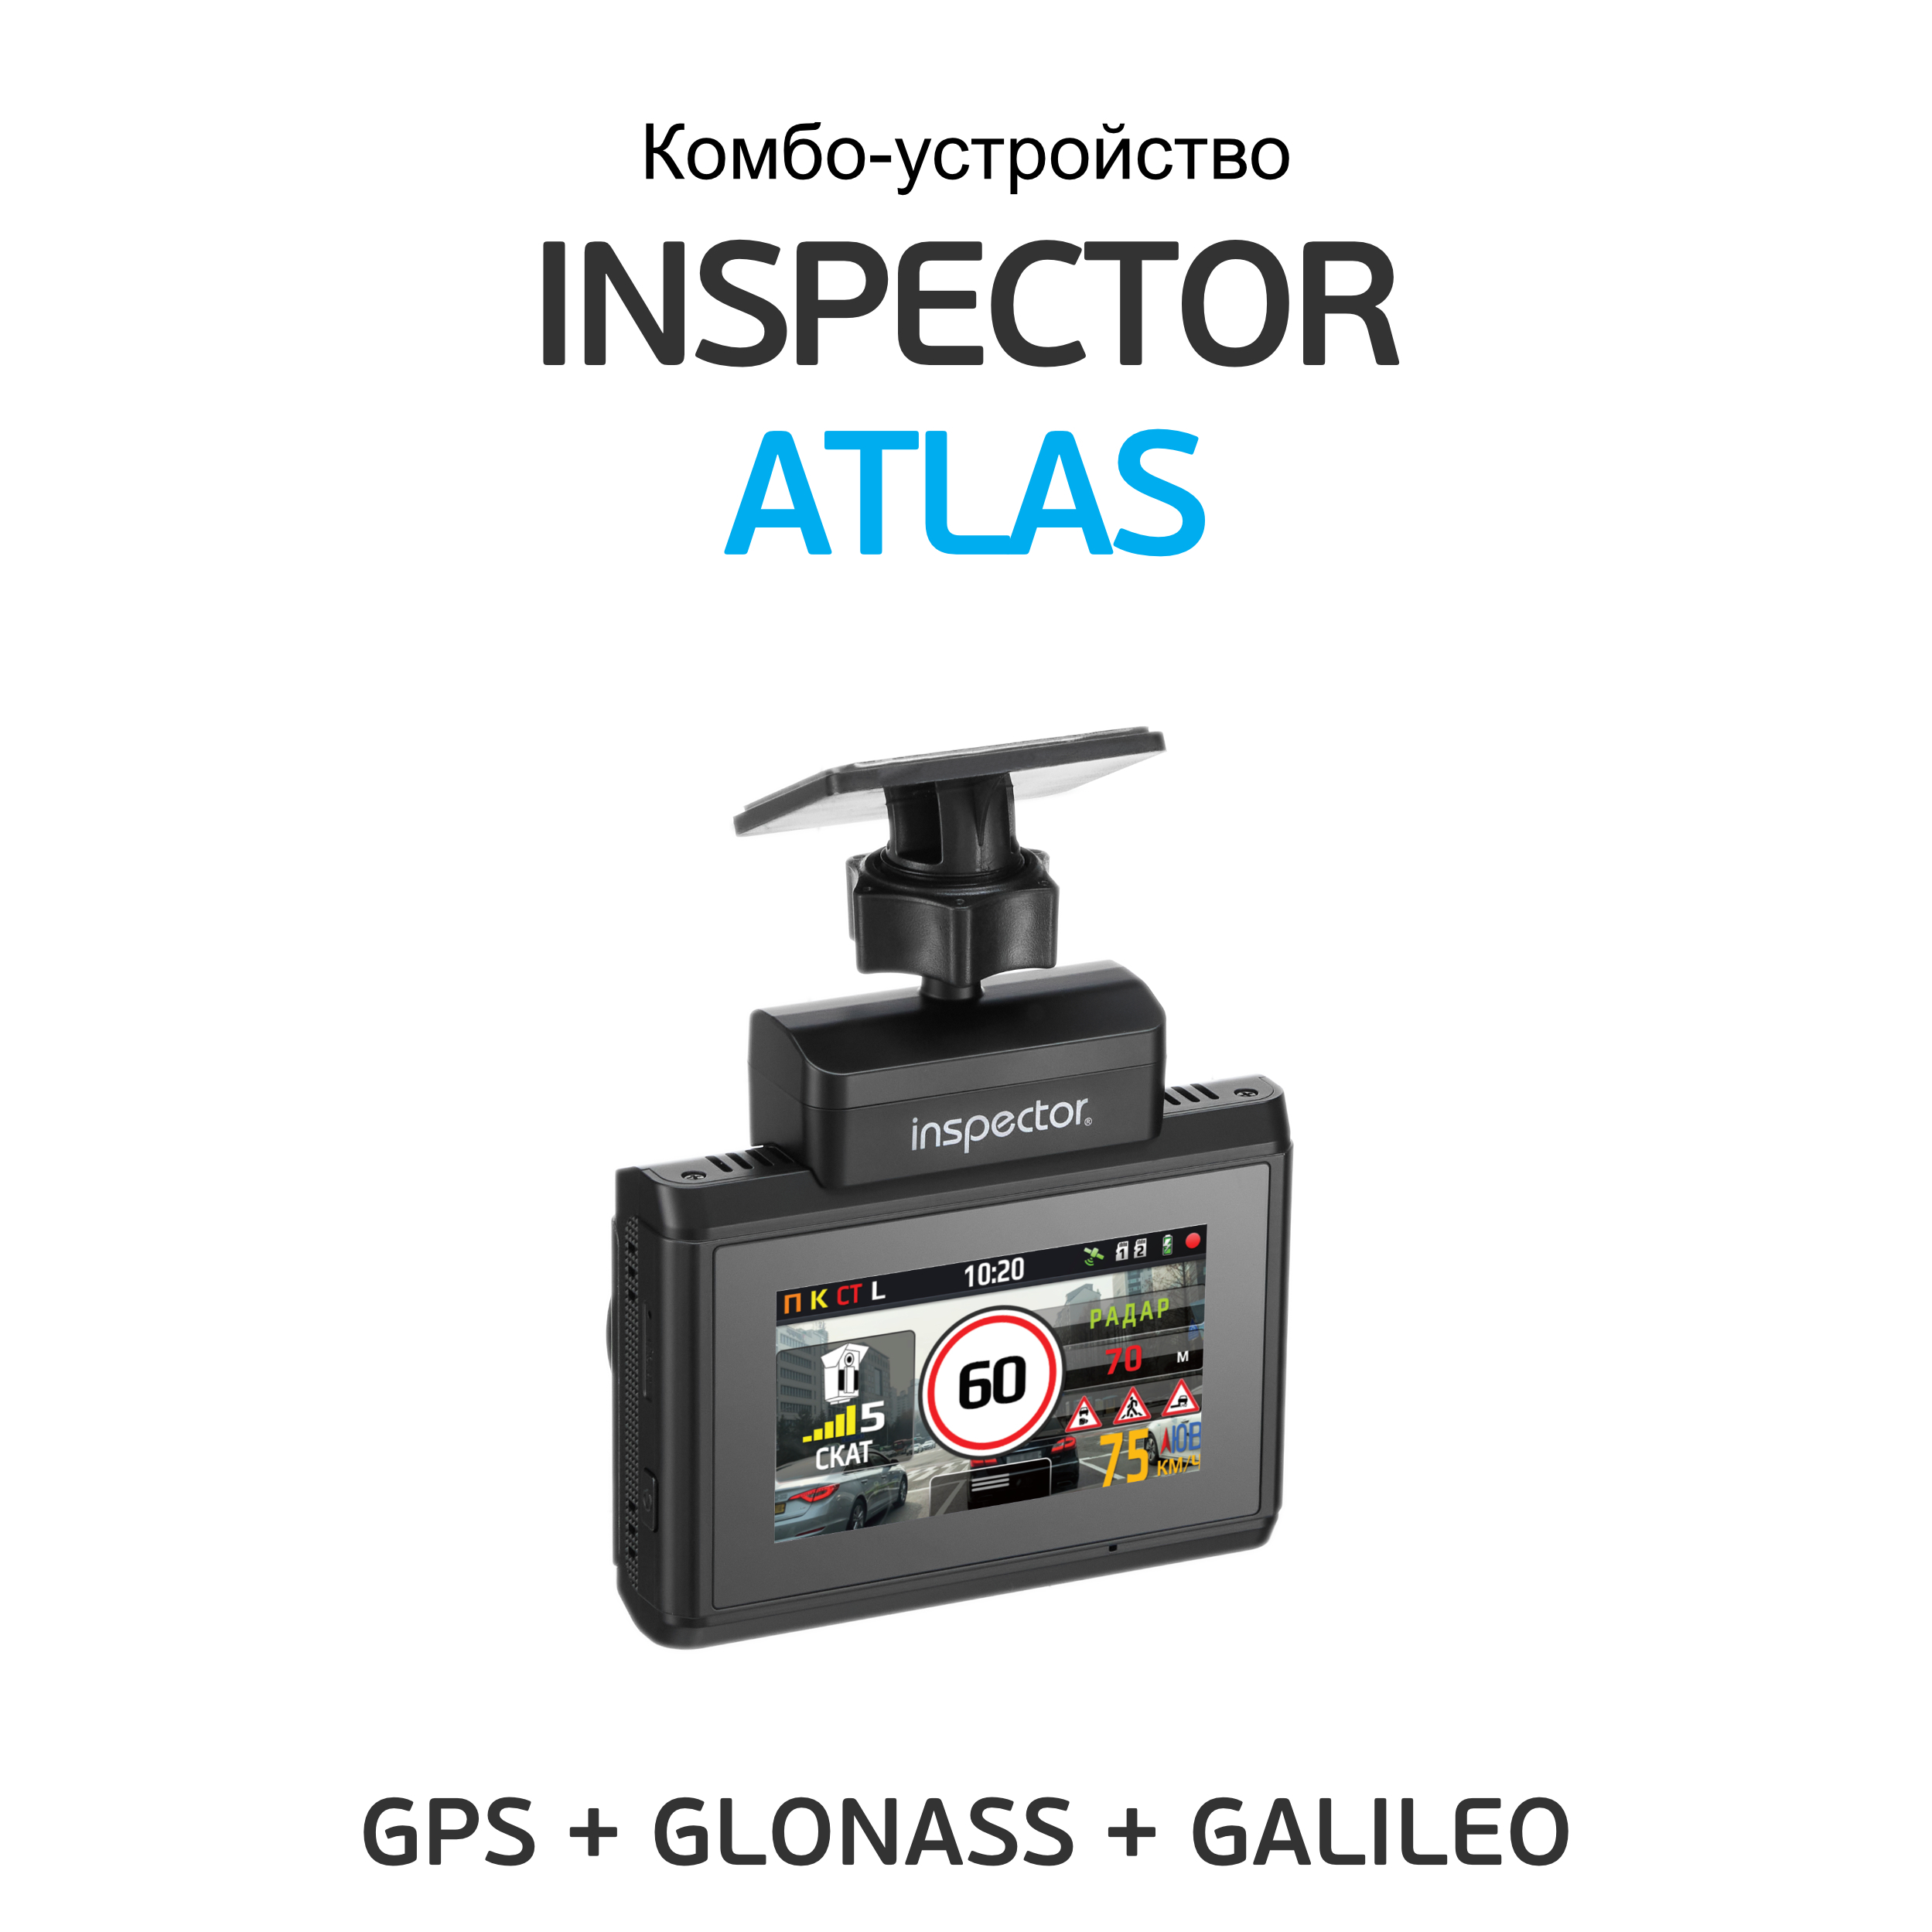 Регистратор атлас. Inspector Atlas видеорегистратор с радар-детектором. Видеорегистратор с радар-детектором Inspector Hermes. Антирадар с видеорегистратором Inspector Atlas (Signature+EMAP) ,WIFI ,3,магнит. Комбо Inspector Atlas.